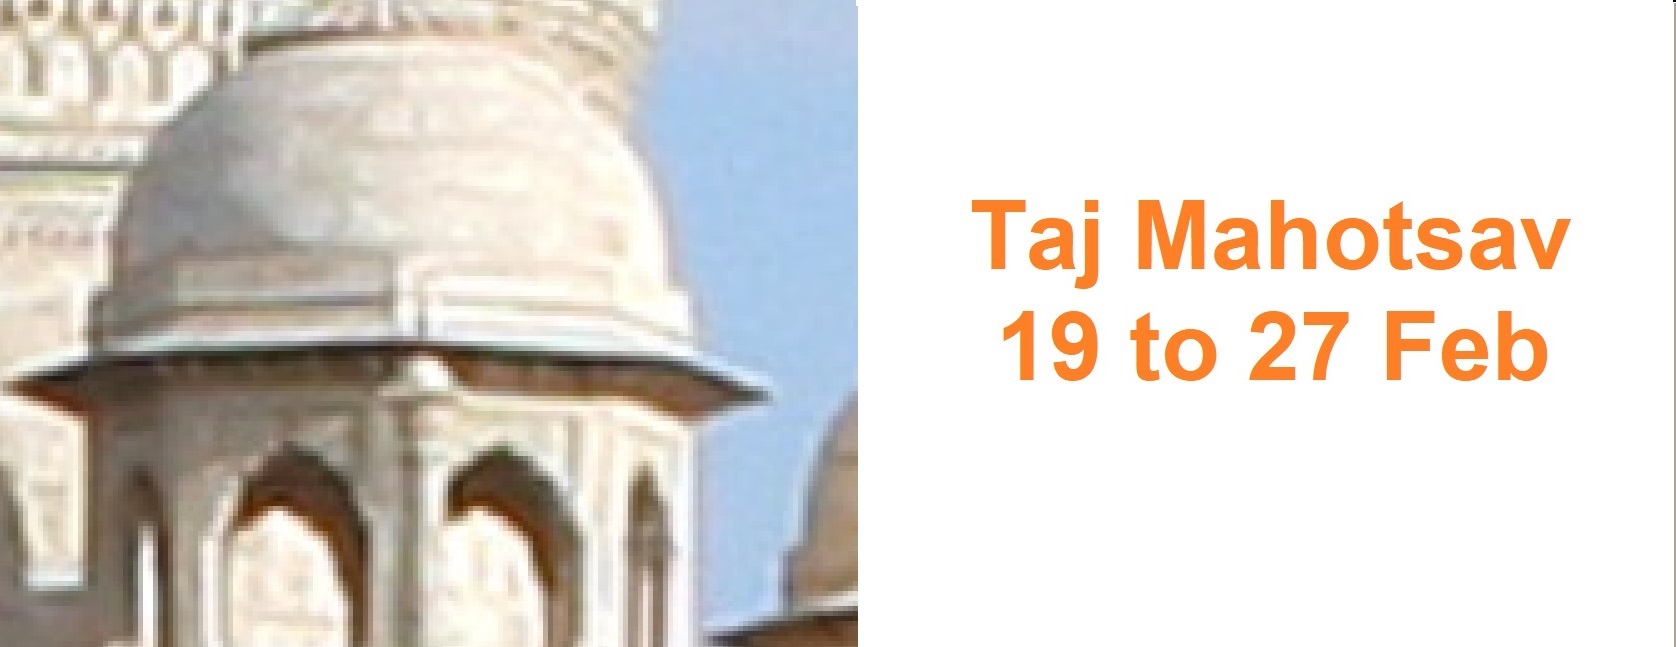 Taj Mahotsav Agra Tour, Uttar Pradesh